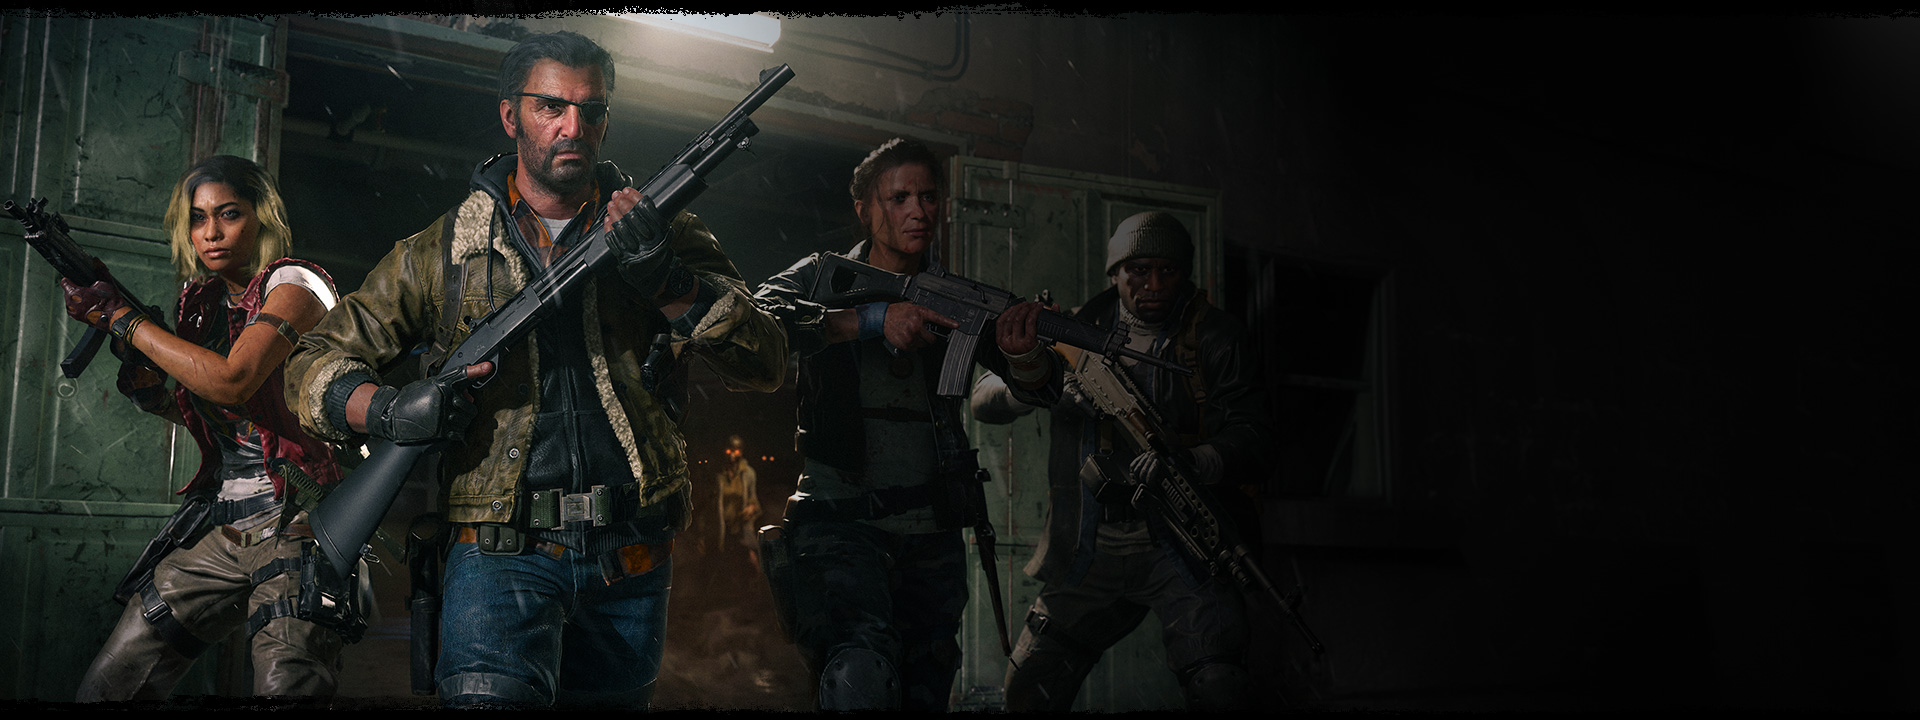 총을 들고 창고에서 나가는 캐릭터 네 명과 그들 뒤에 서서 주황색 눈을 빛내는 좀비.